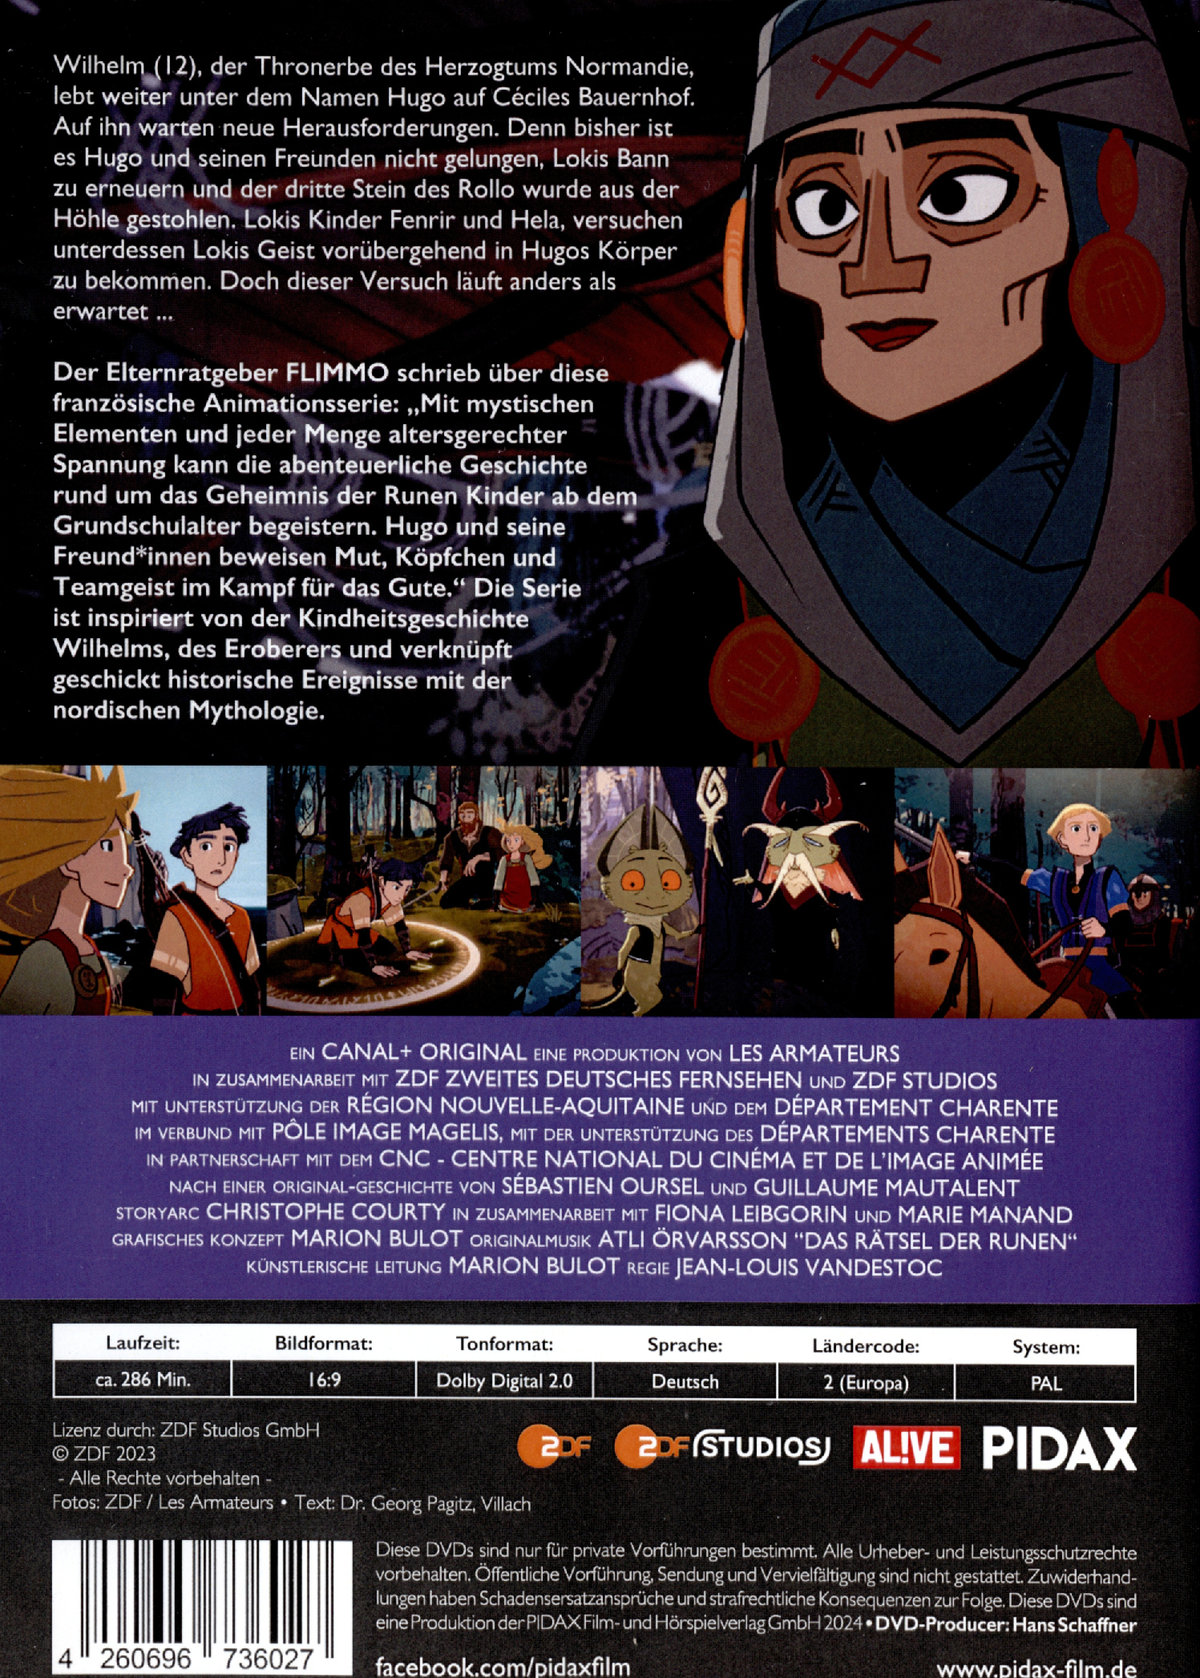 Das Rätsel der Runen, Vol. 2 / Weitere 13 Folgen der Fantasy-Zeichentrickserie von den Machern von DAS GEHEIMNIS VON KELLS (Pidax Animation)  [2 DVDs]  (DVD)